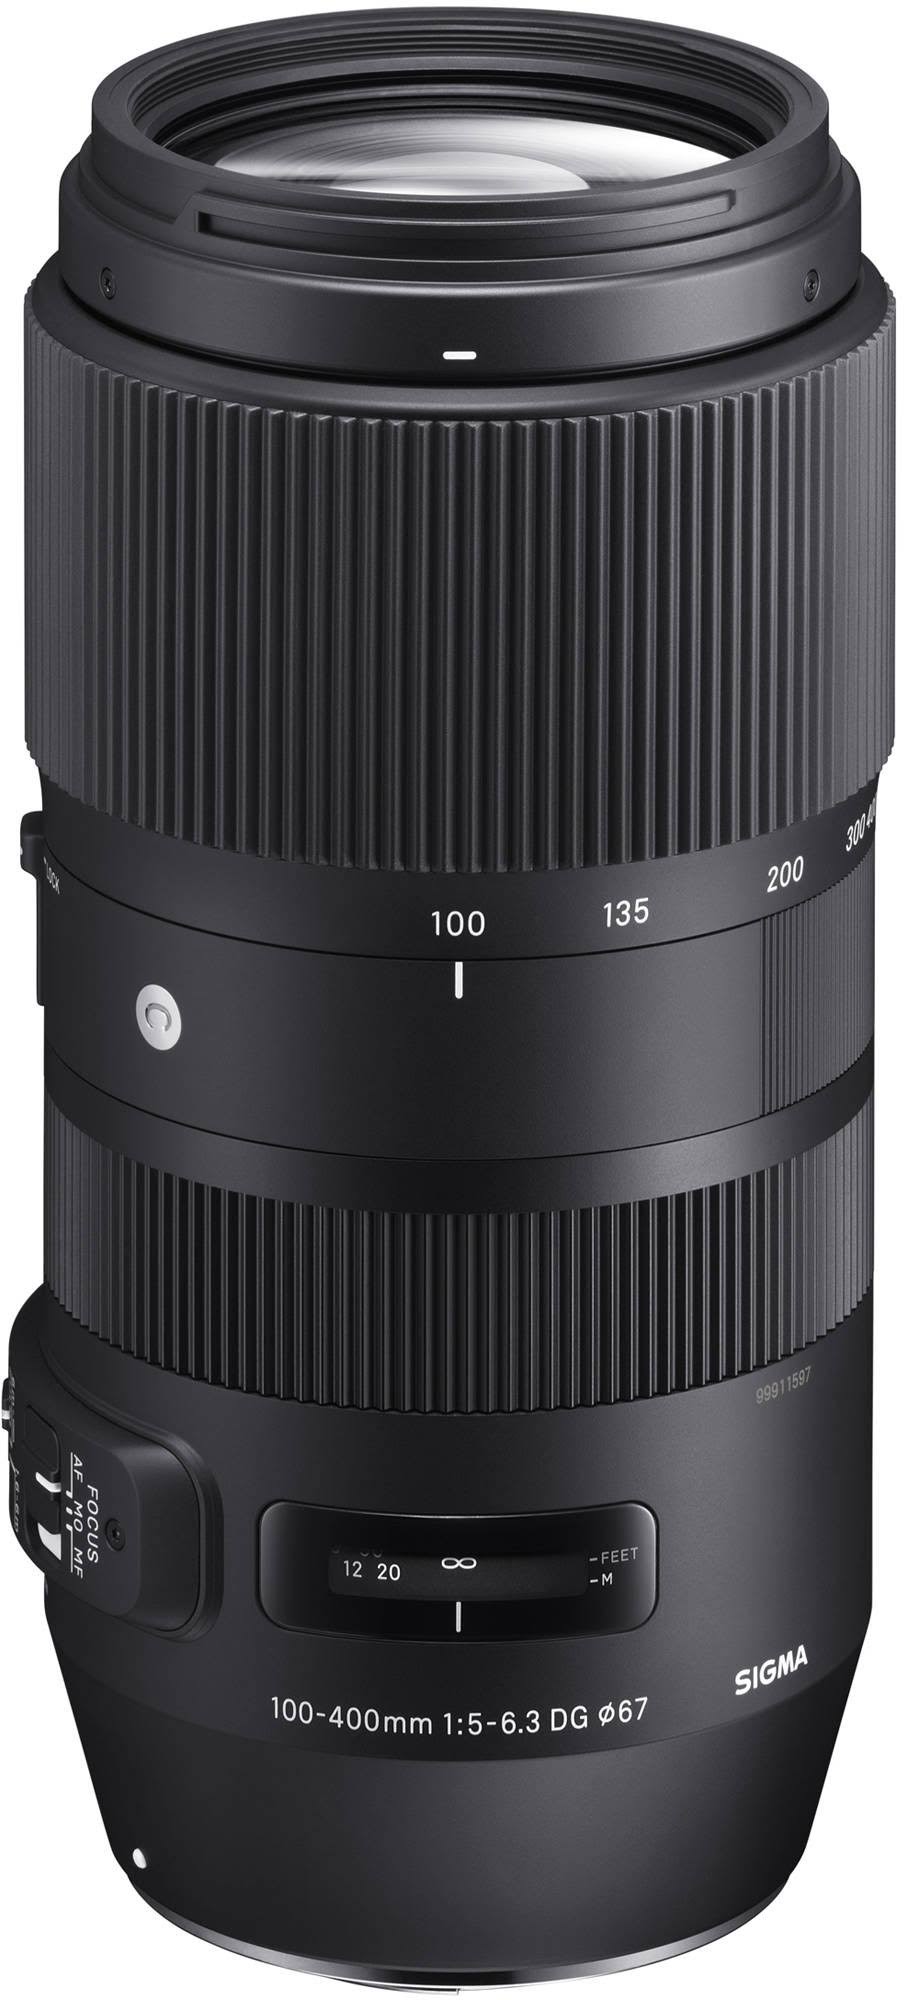 SIGMA 100-400mm f/5-6.3 DG OS HSM Contemporary Lens for Nikon F